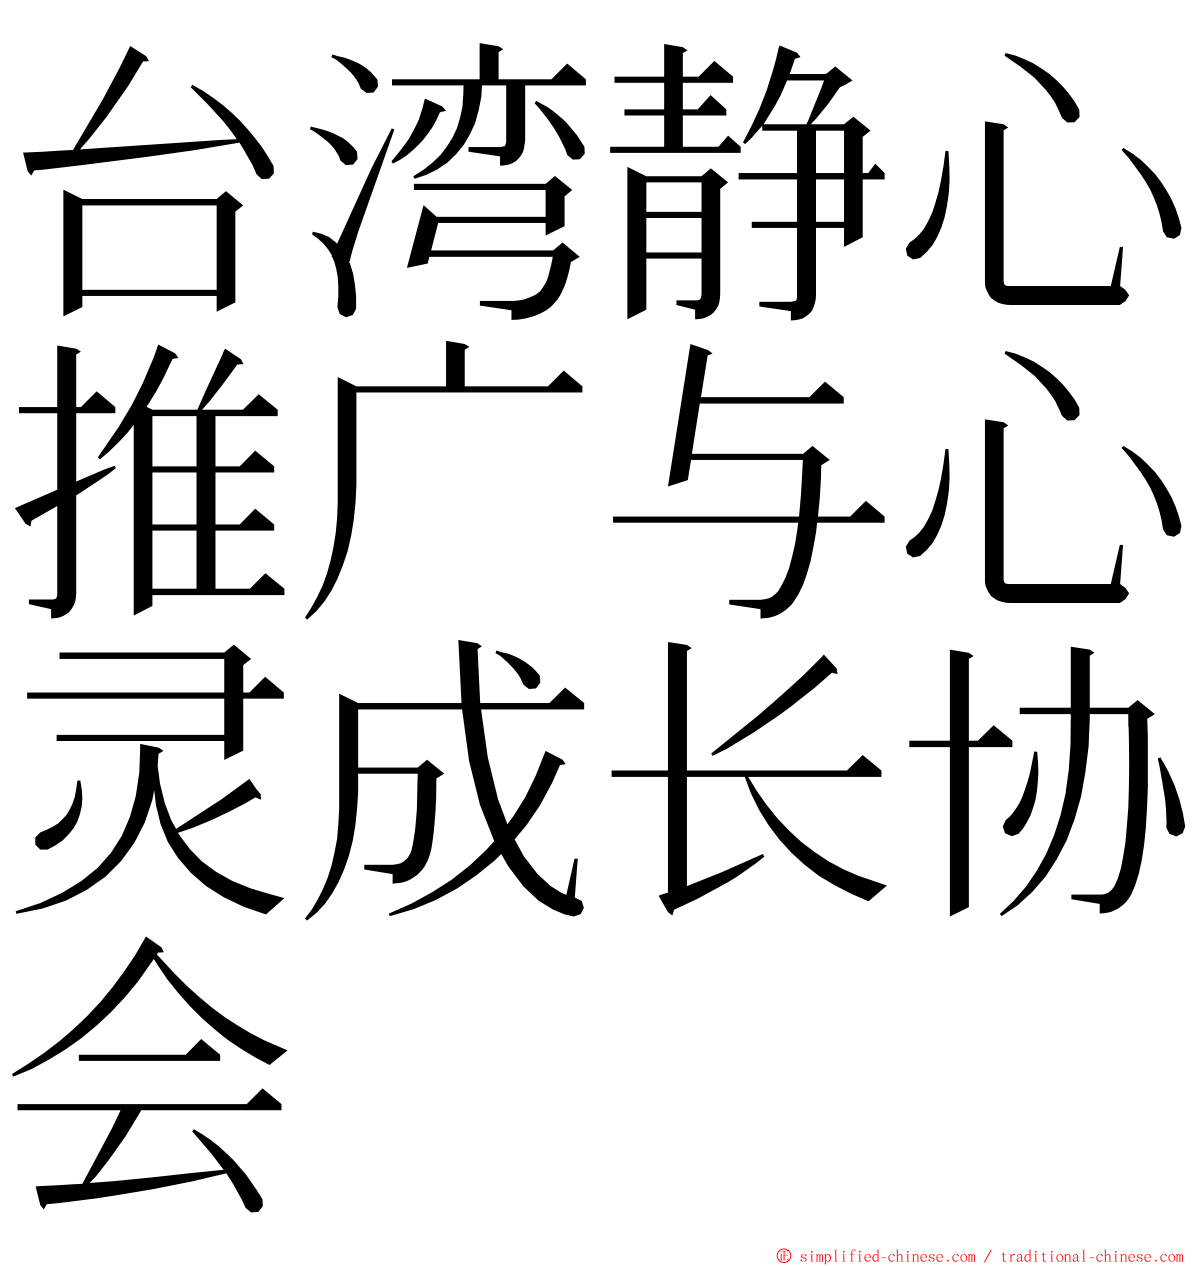 台湾静心推广与心灵成长协会 ming font